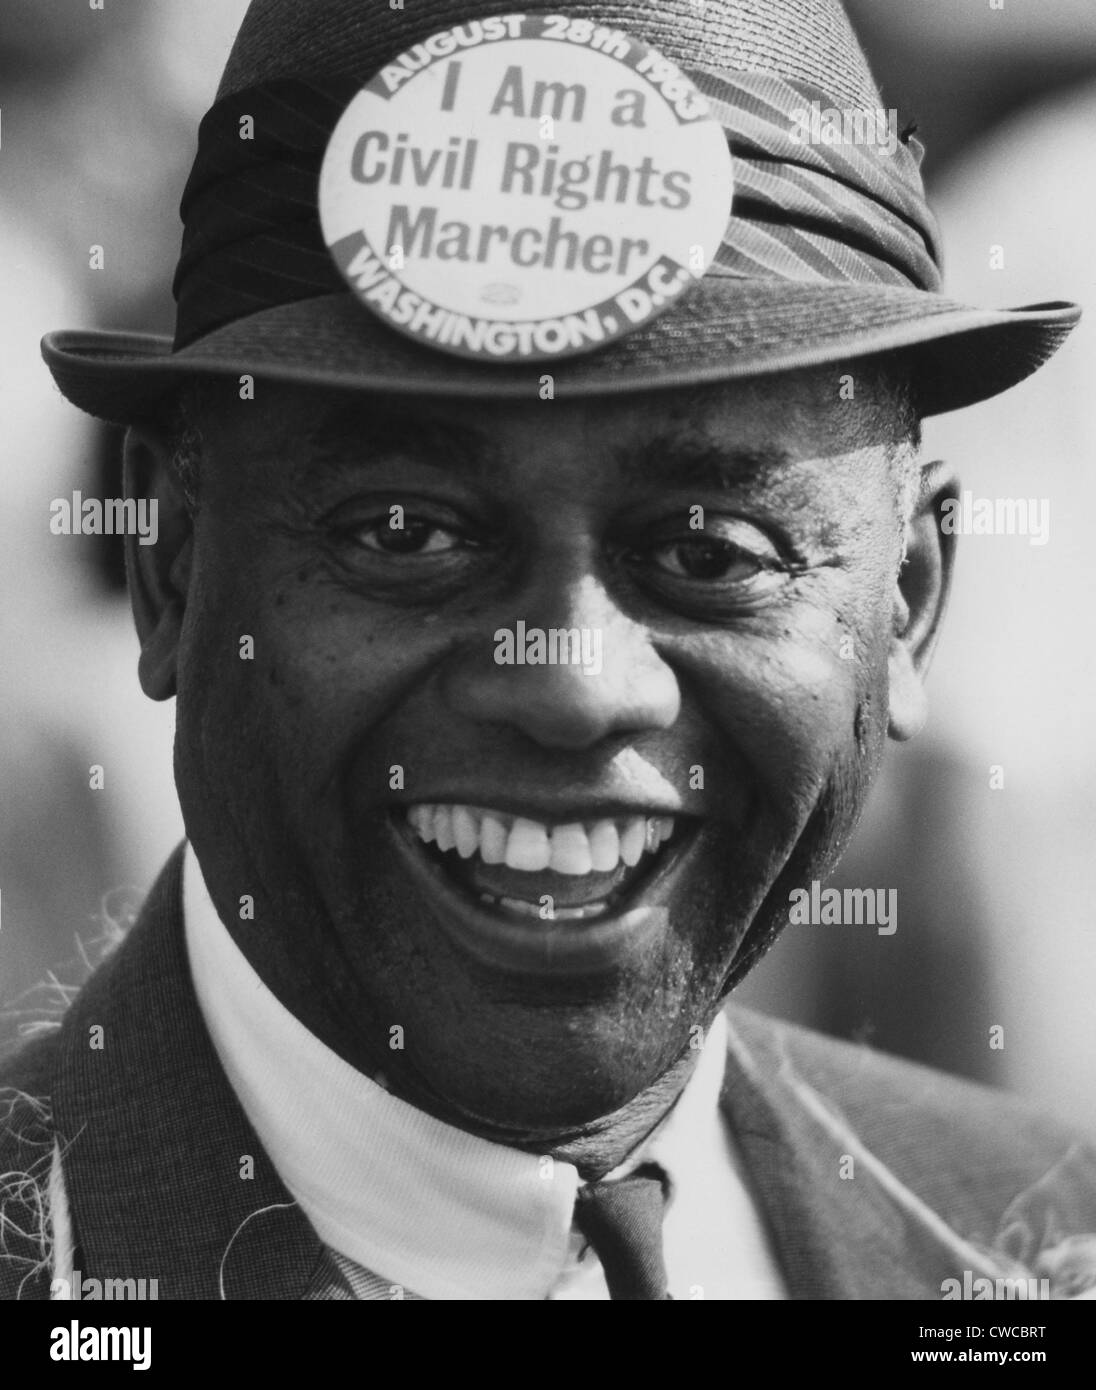 Mars 1963 sur l'État de Washington. Marcheur souriante portant un chapeau avec un bouton qui dit : "Je suis un marcheur des droits civils." Le 28 août 1963. Banque D'Images